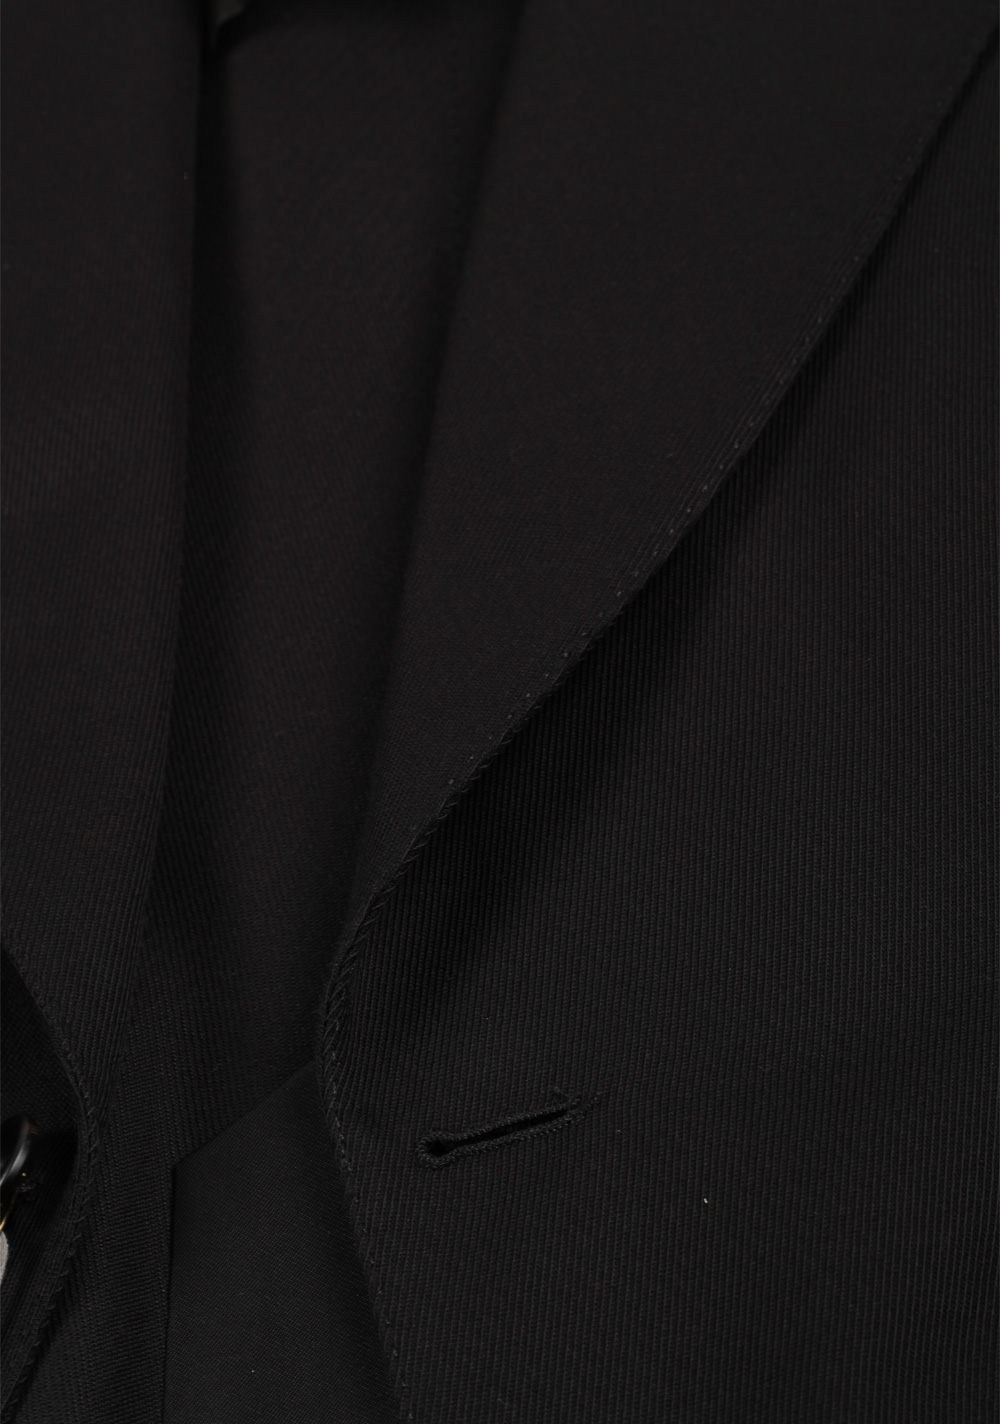 TOM FORD Atticus Black Suit Size 46 / 36R U.S. | Costume Limité